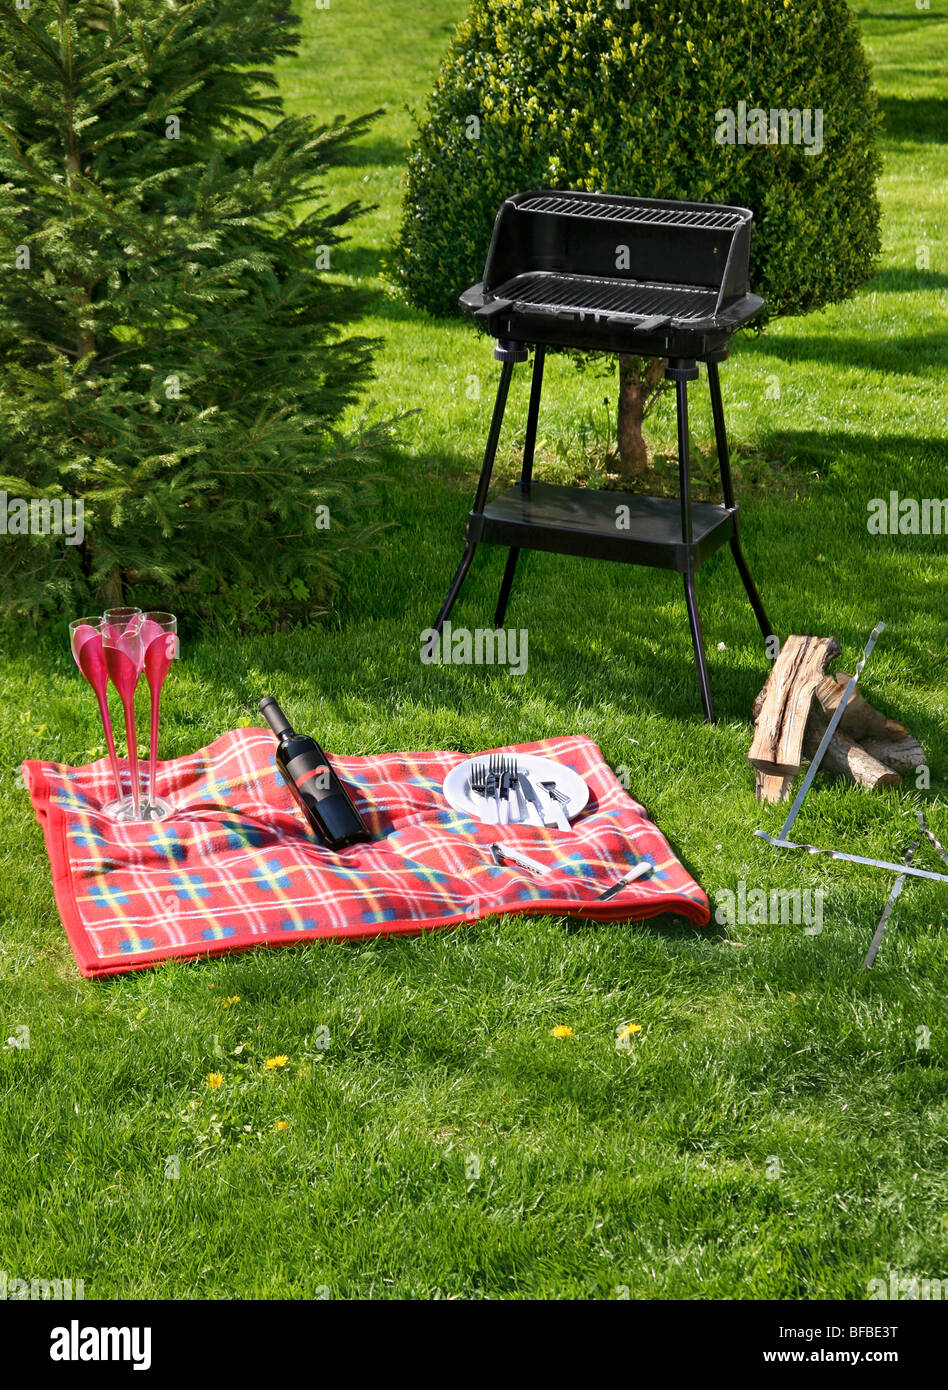 La préparation de pique-niquer sur l'herbe verte avec un barbecue Banque D'Images